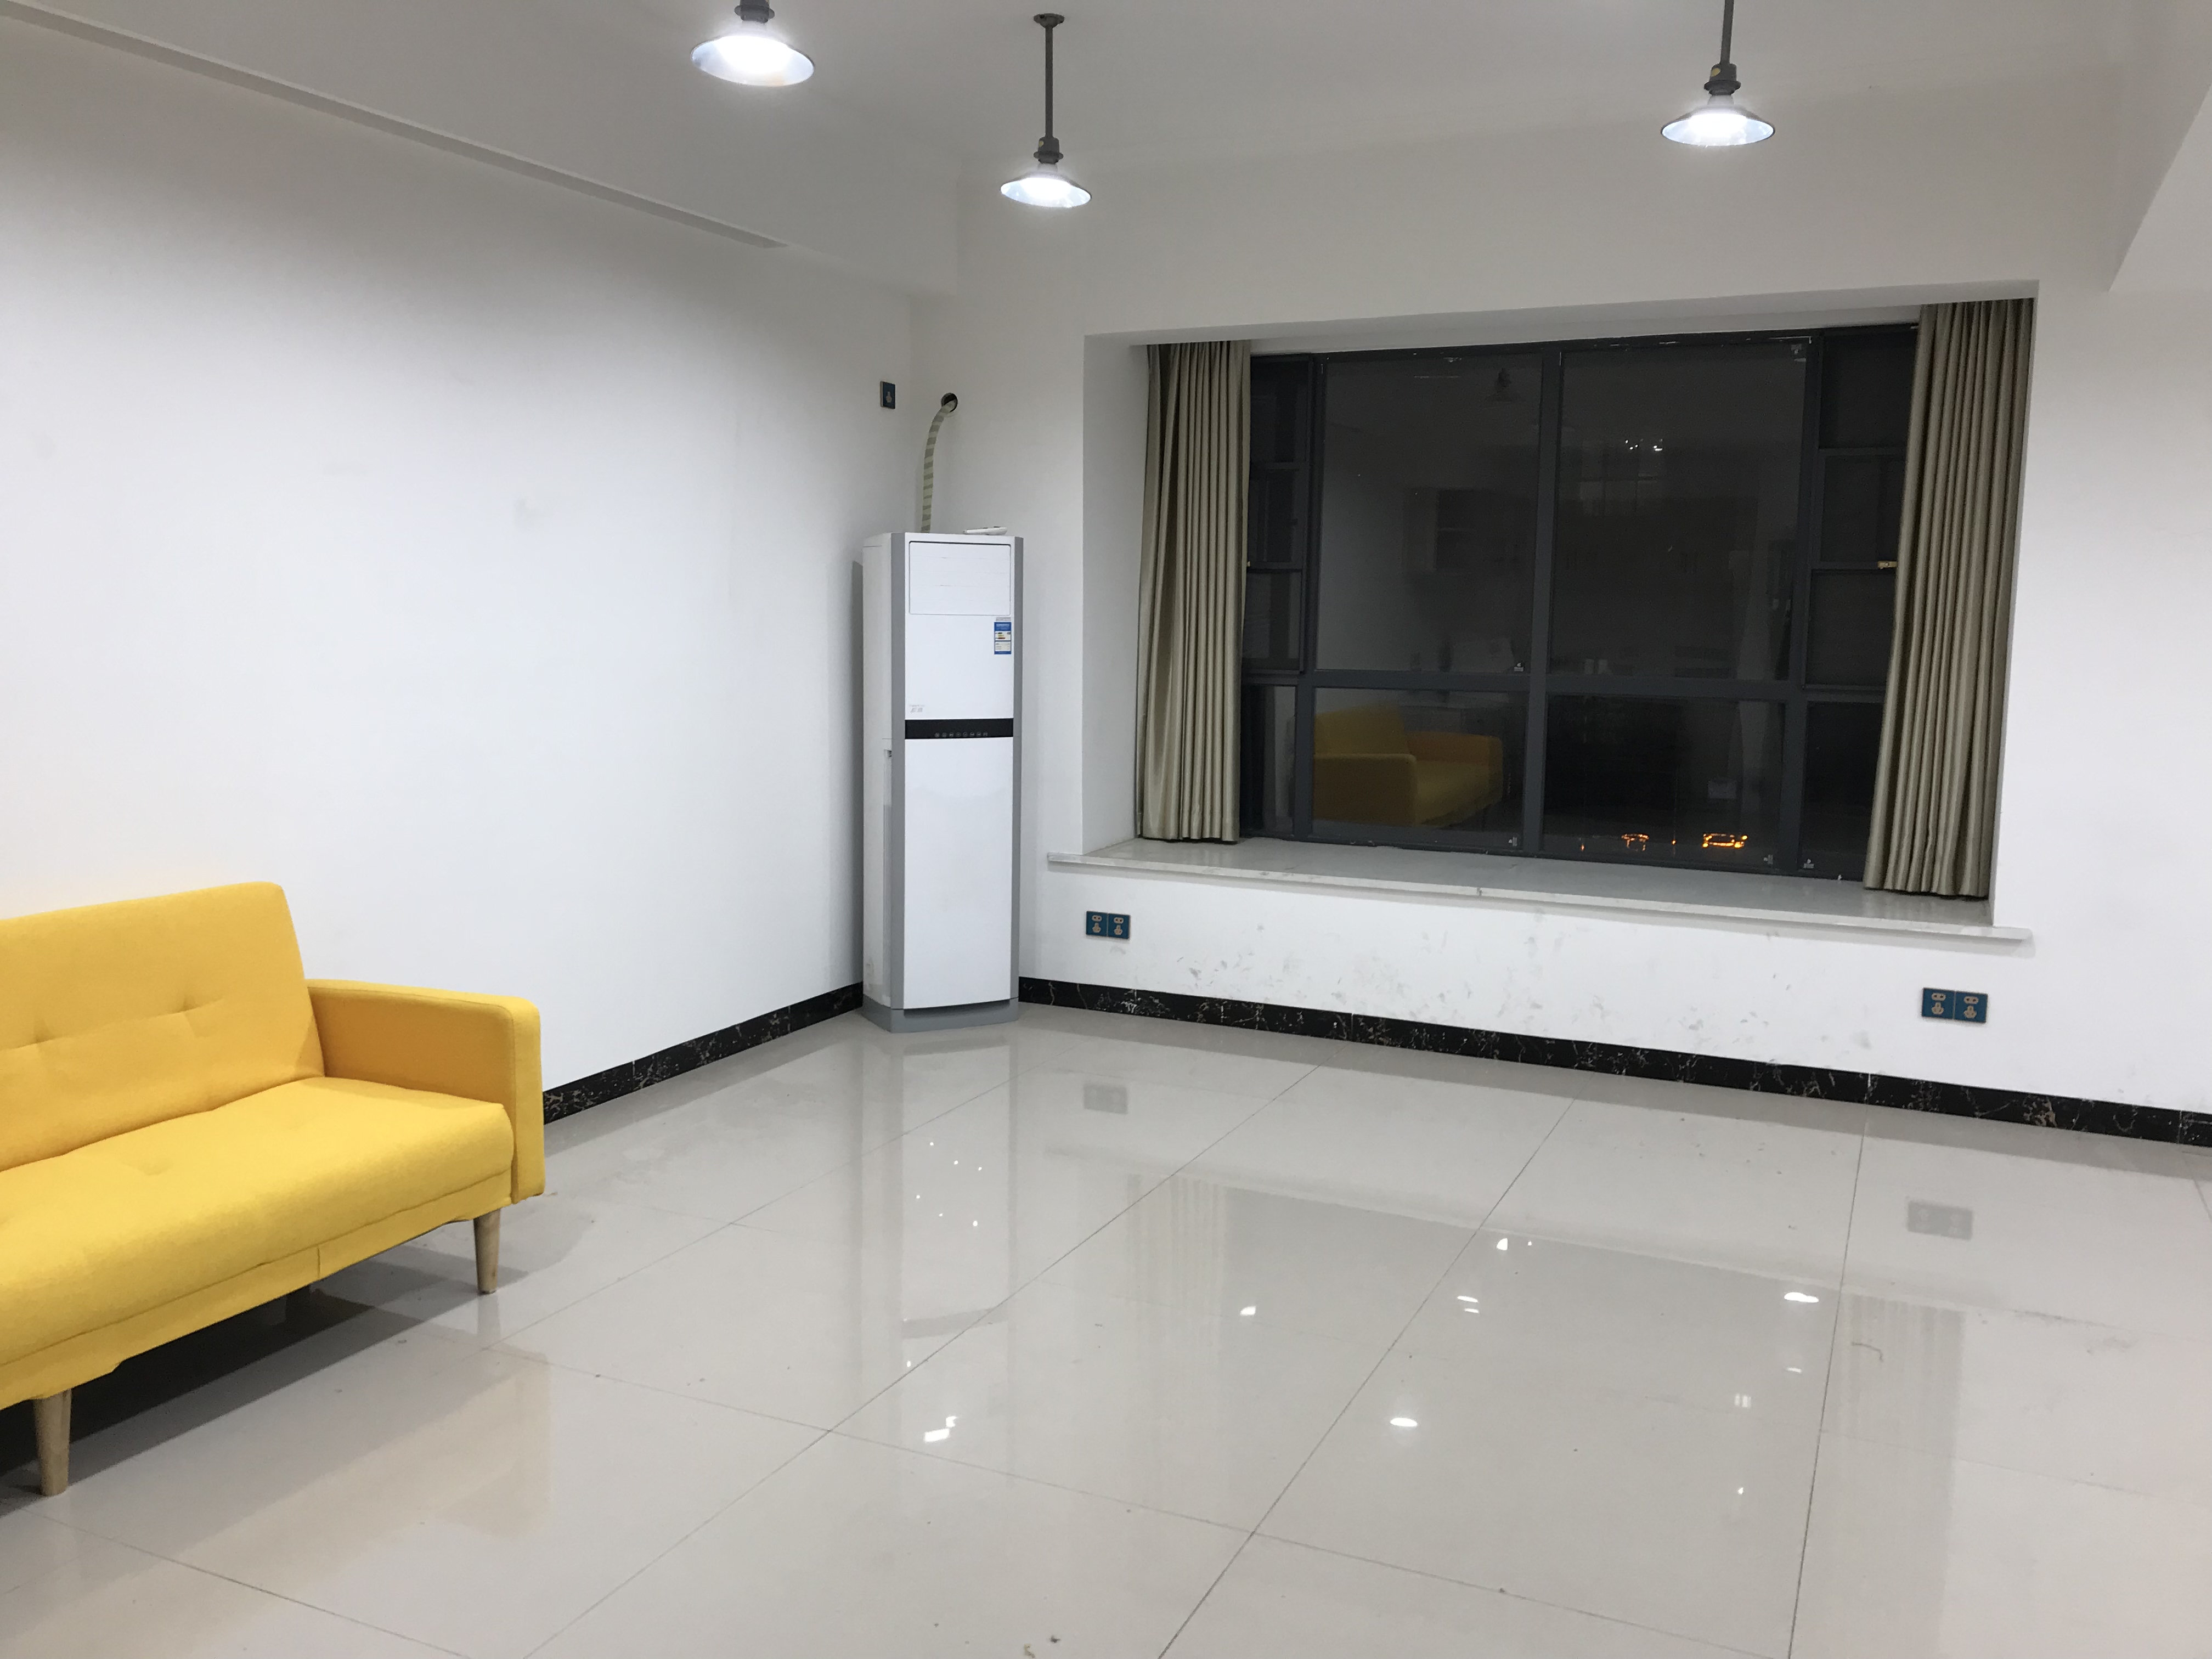  Longquan Mingdi hardcover office rental